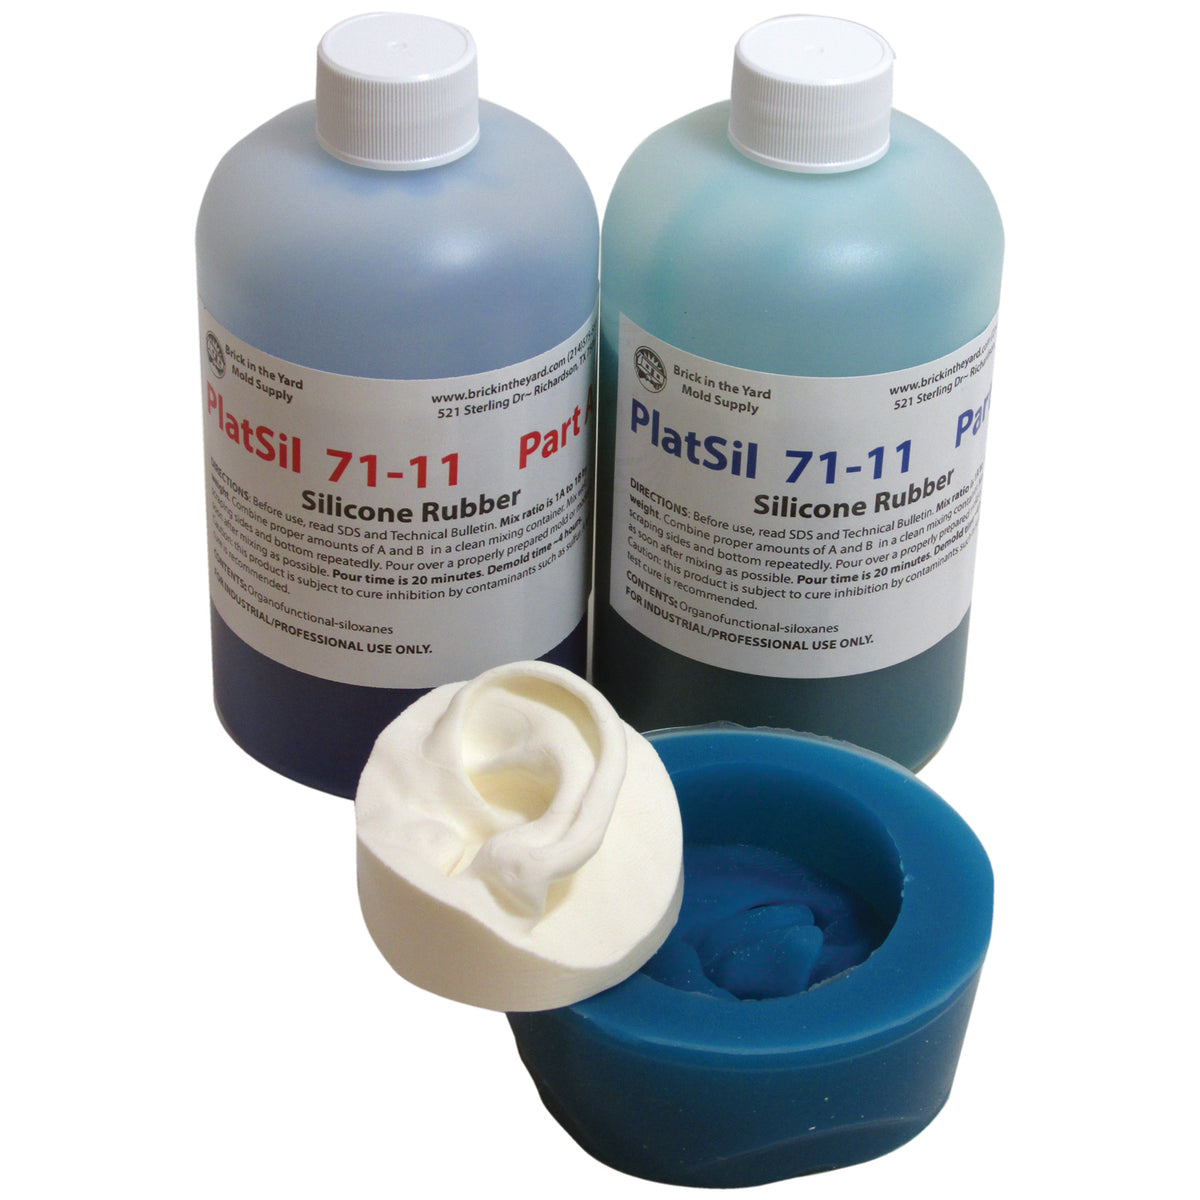 PlatSil 71-11 Precision Molding silicone rubber